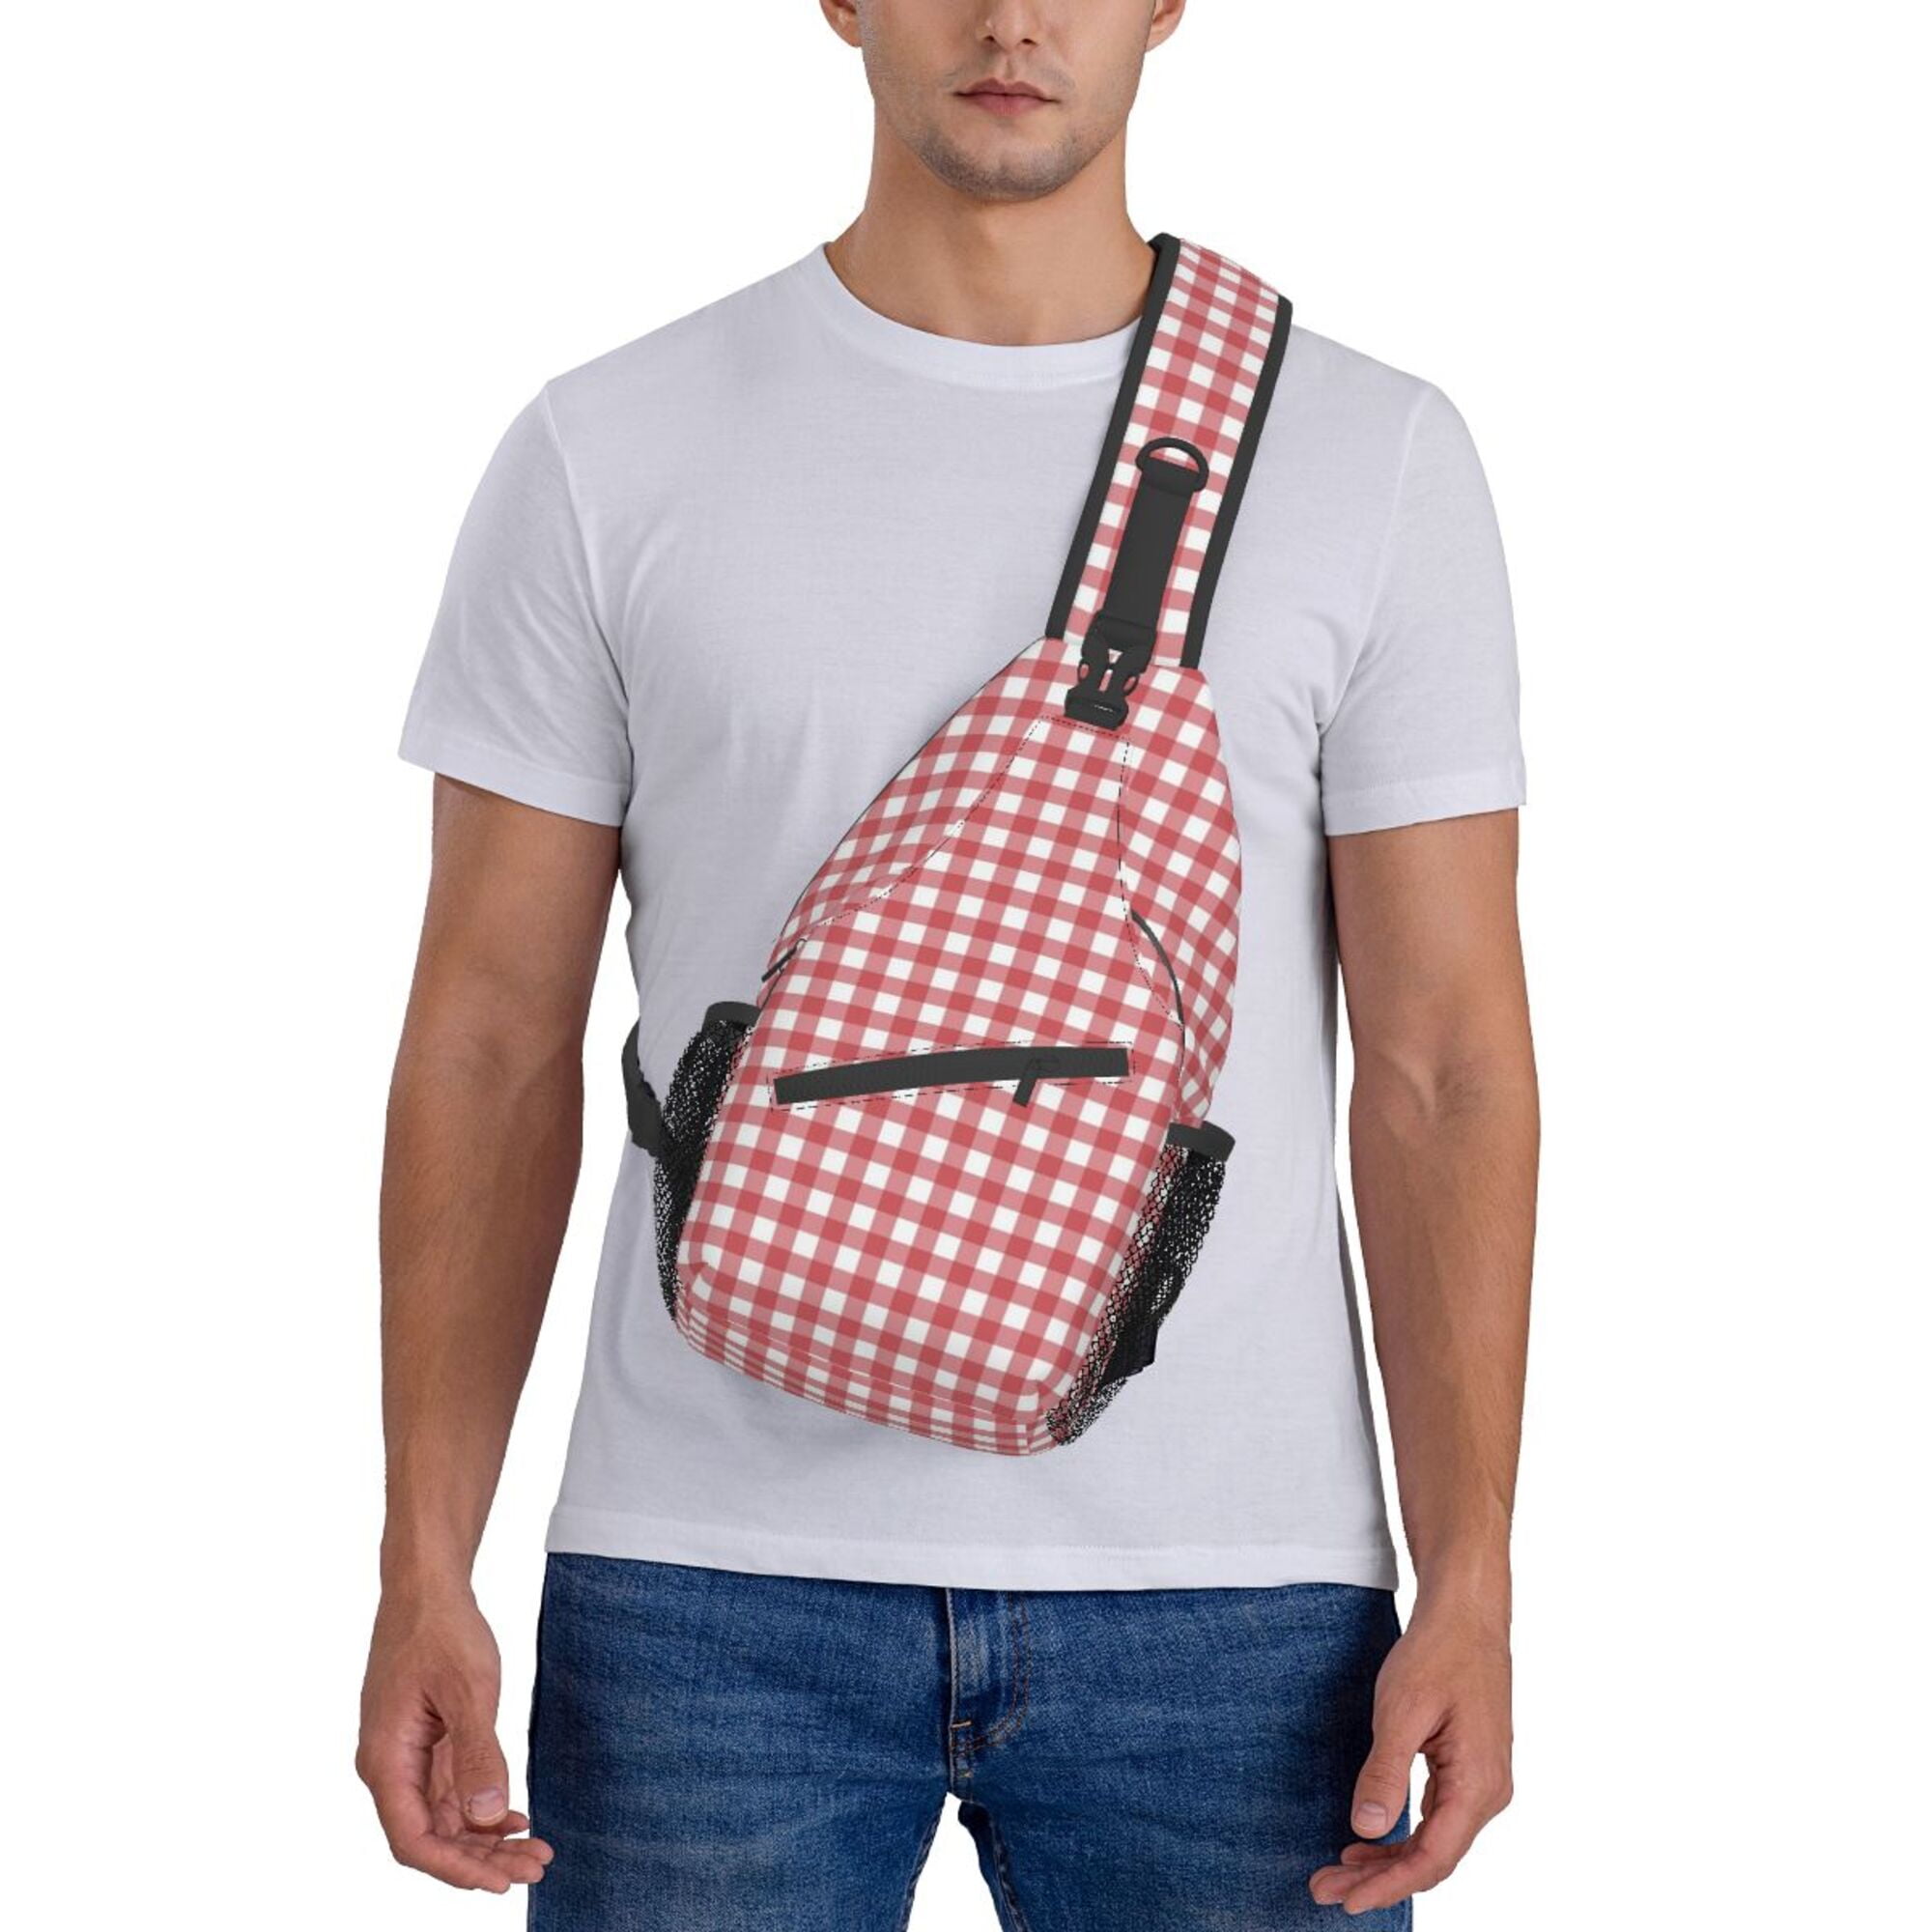  redaica Sling Bag Crossbody Backpack for Women Men